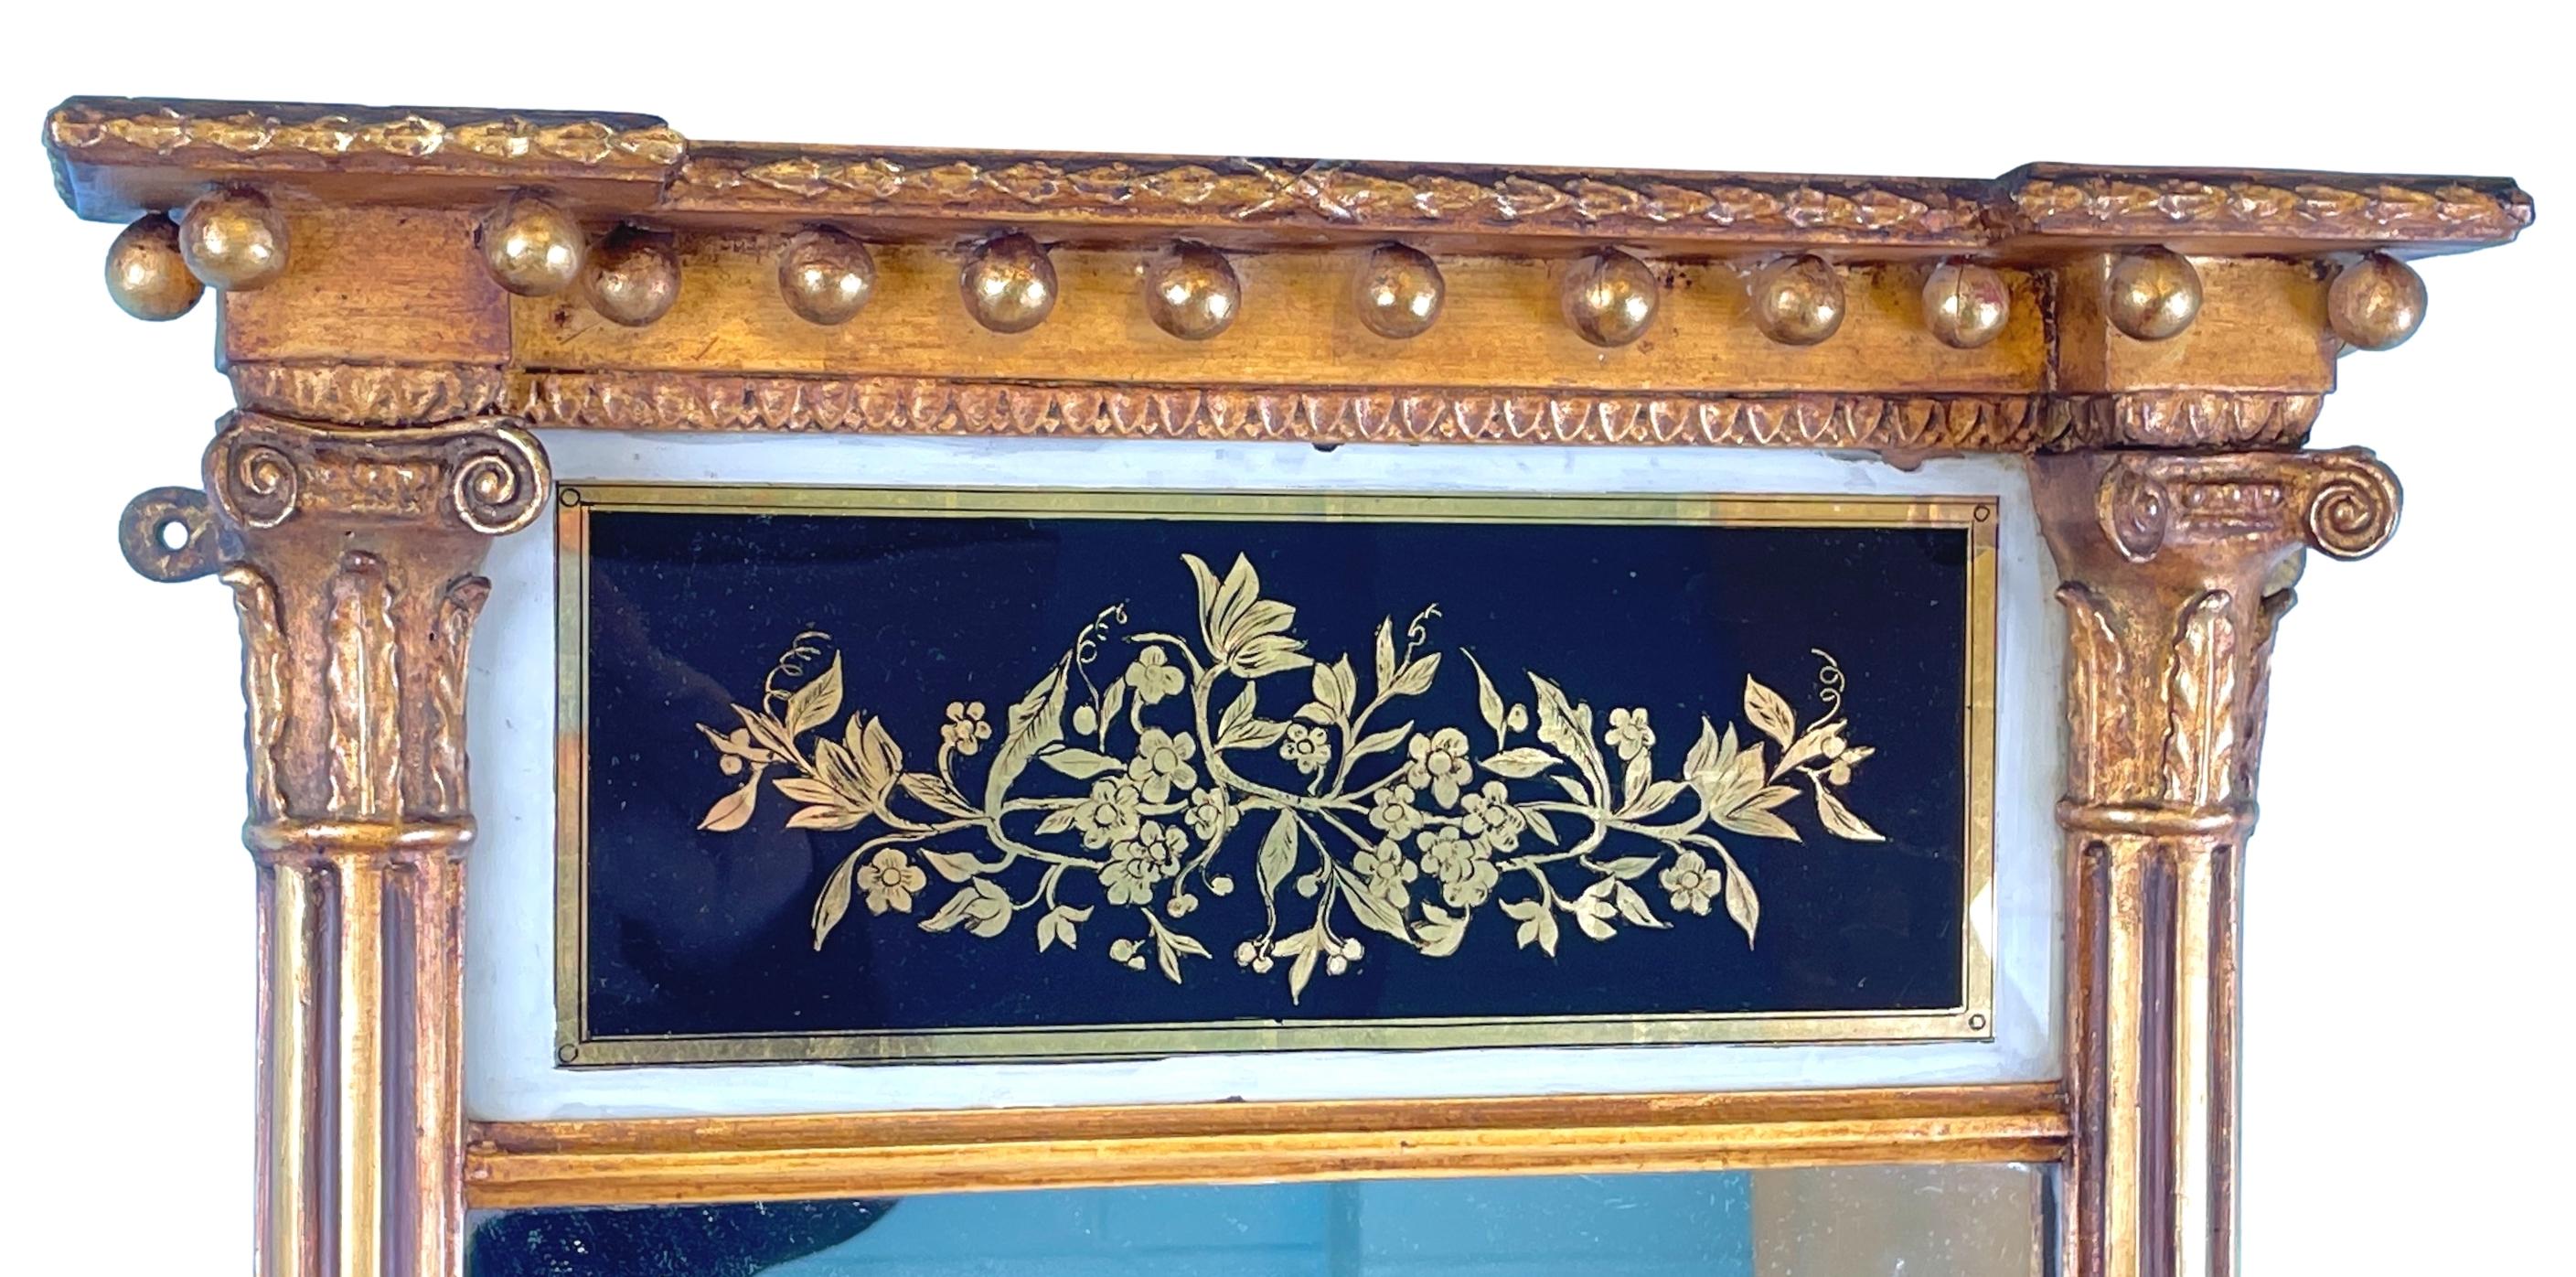 Très beau miroir à piédestal doré du milieu du XIXe siècle, de proportions inhabituellement petites, avec un élégant panneau en verre églomisé à motif de feuillage, sur une plaque de miroir d'origine flanquée d'élégantes colonnes cannelées à demi